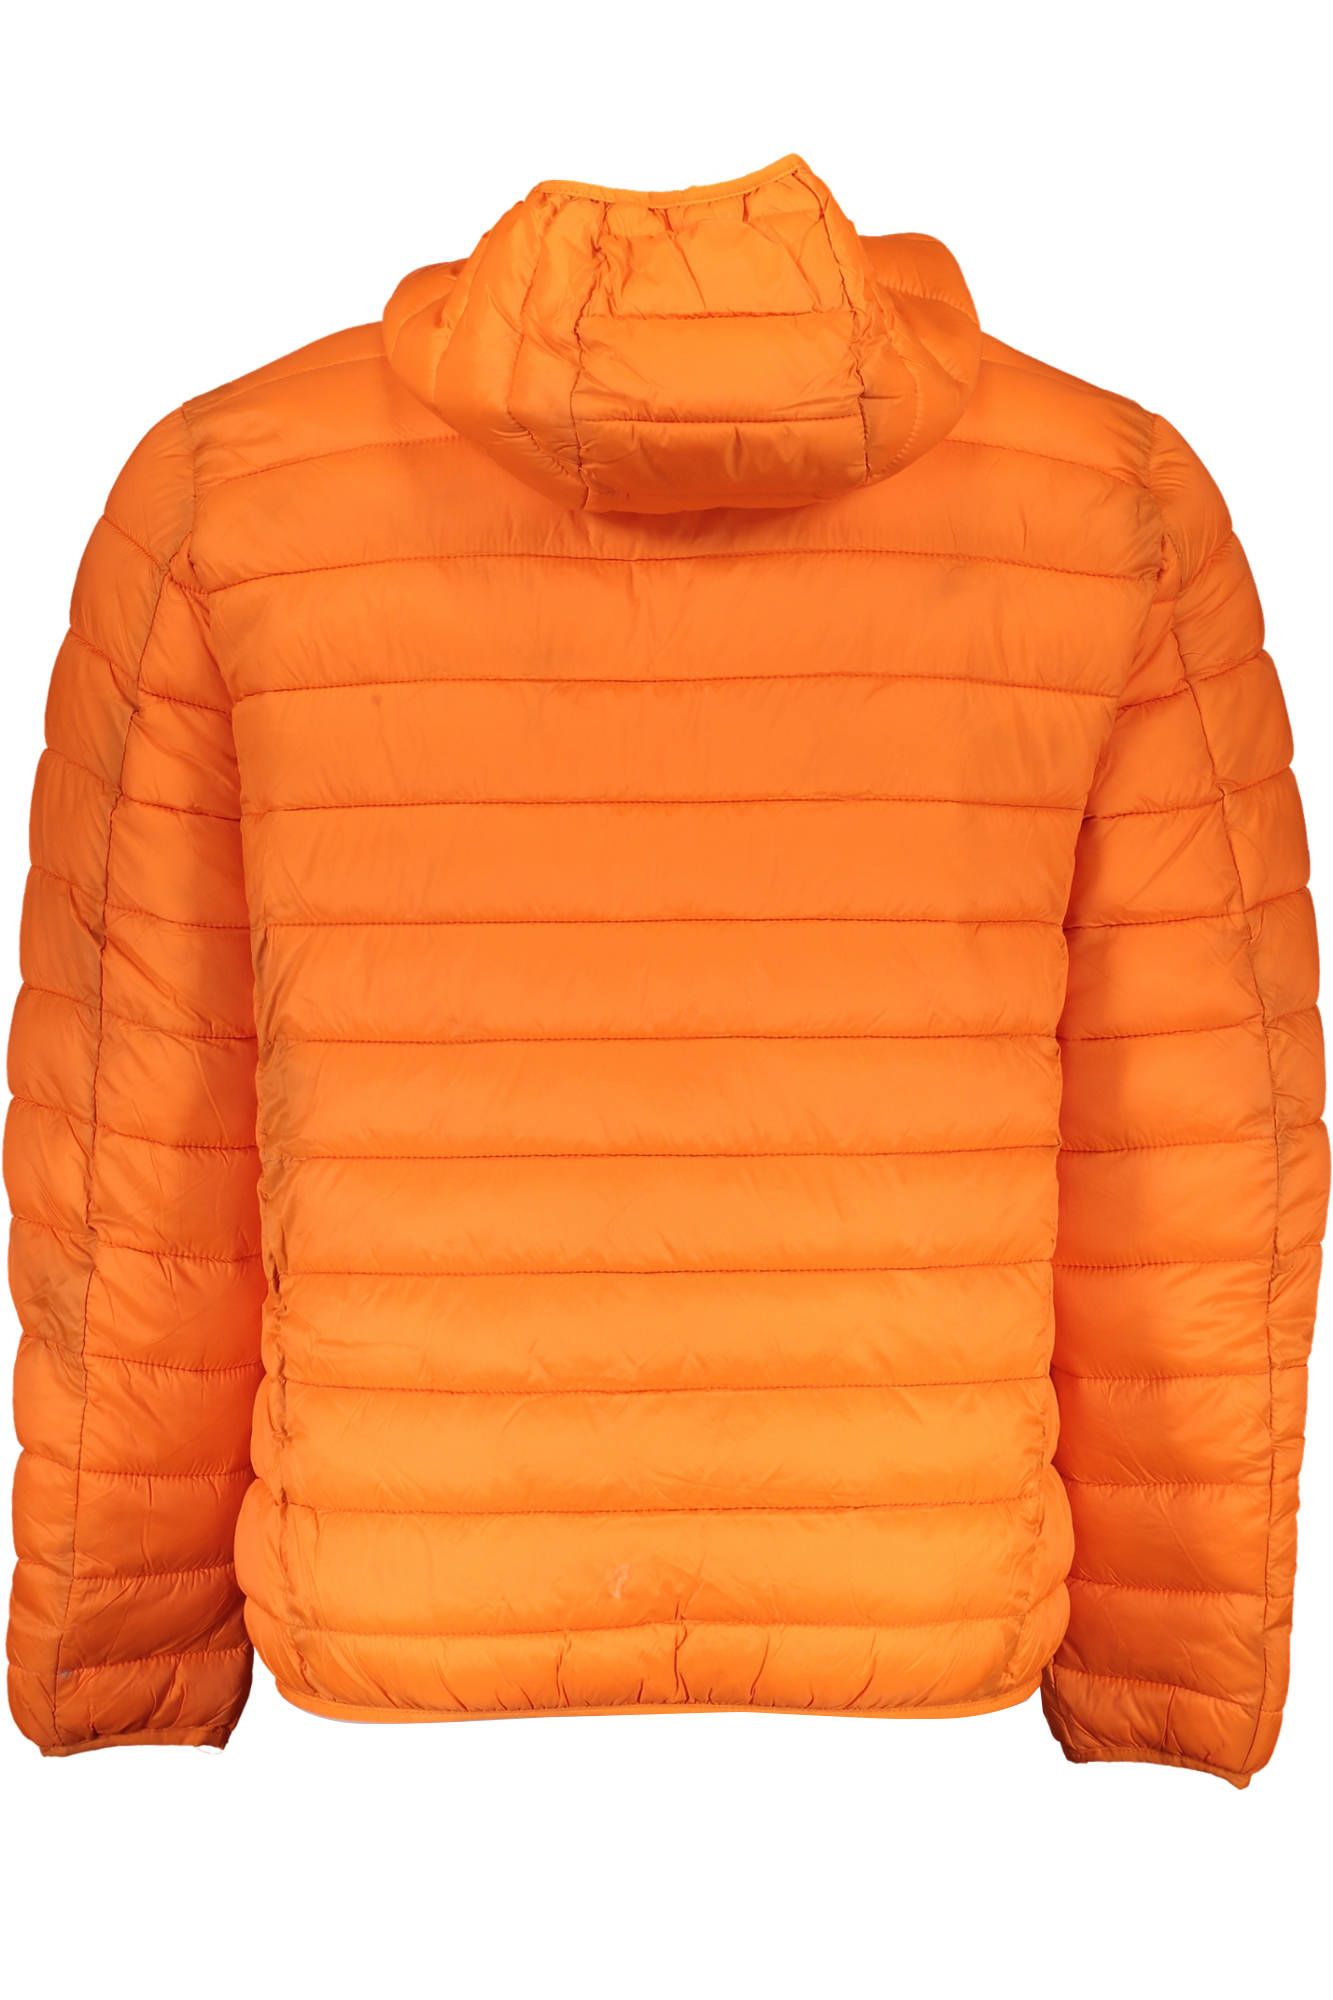 Chic Orange Hooded Jacket for Men